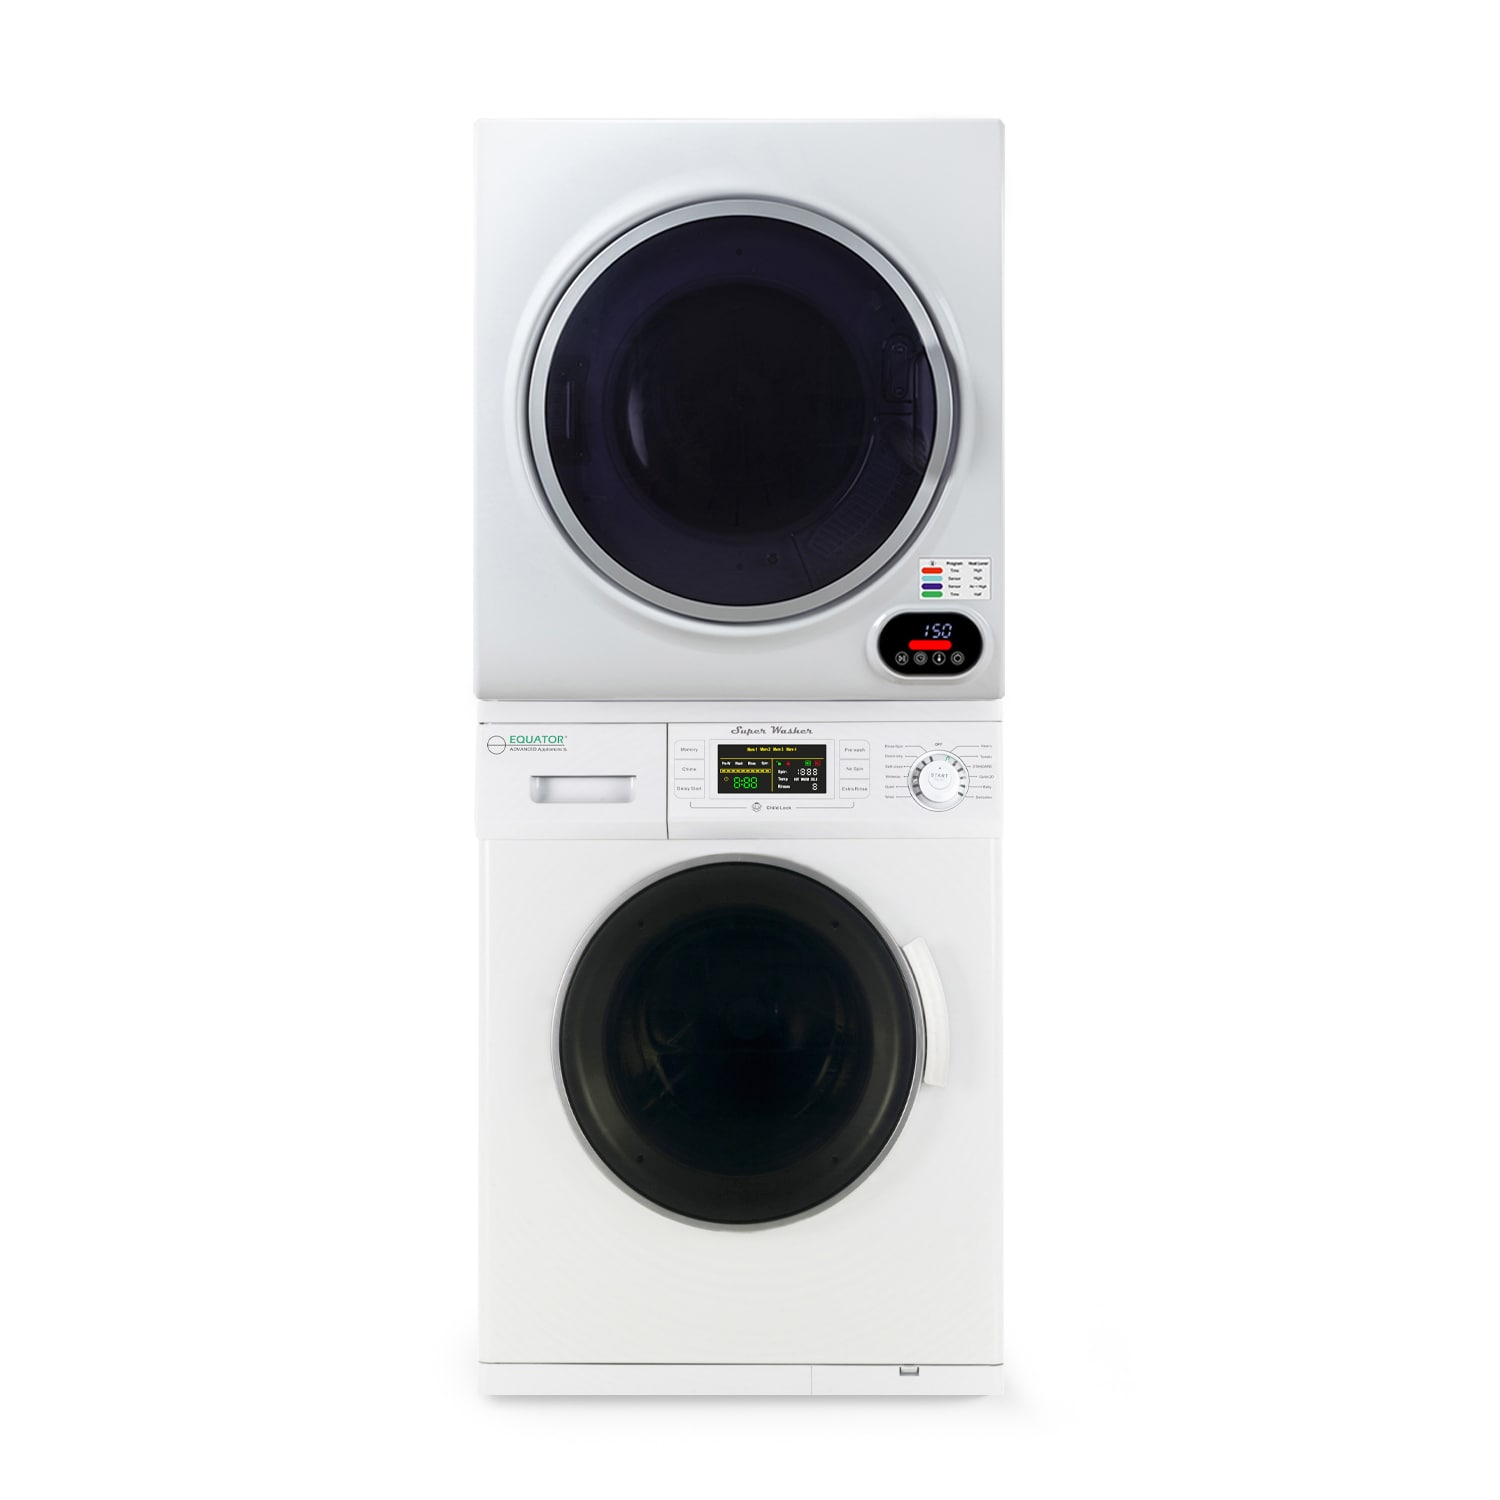 Panda Washing Machines and Dryers - Parts, User Guide & Repair Help  Small washing  machine, Mini washing machine, Portable washing machine